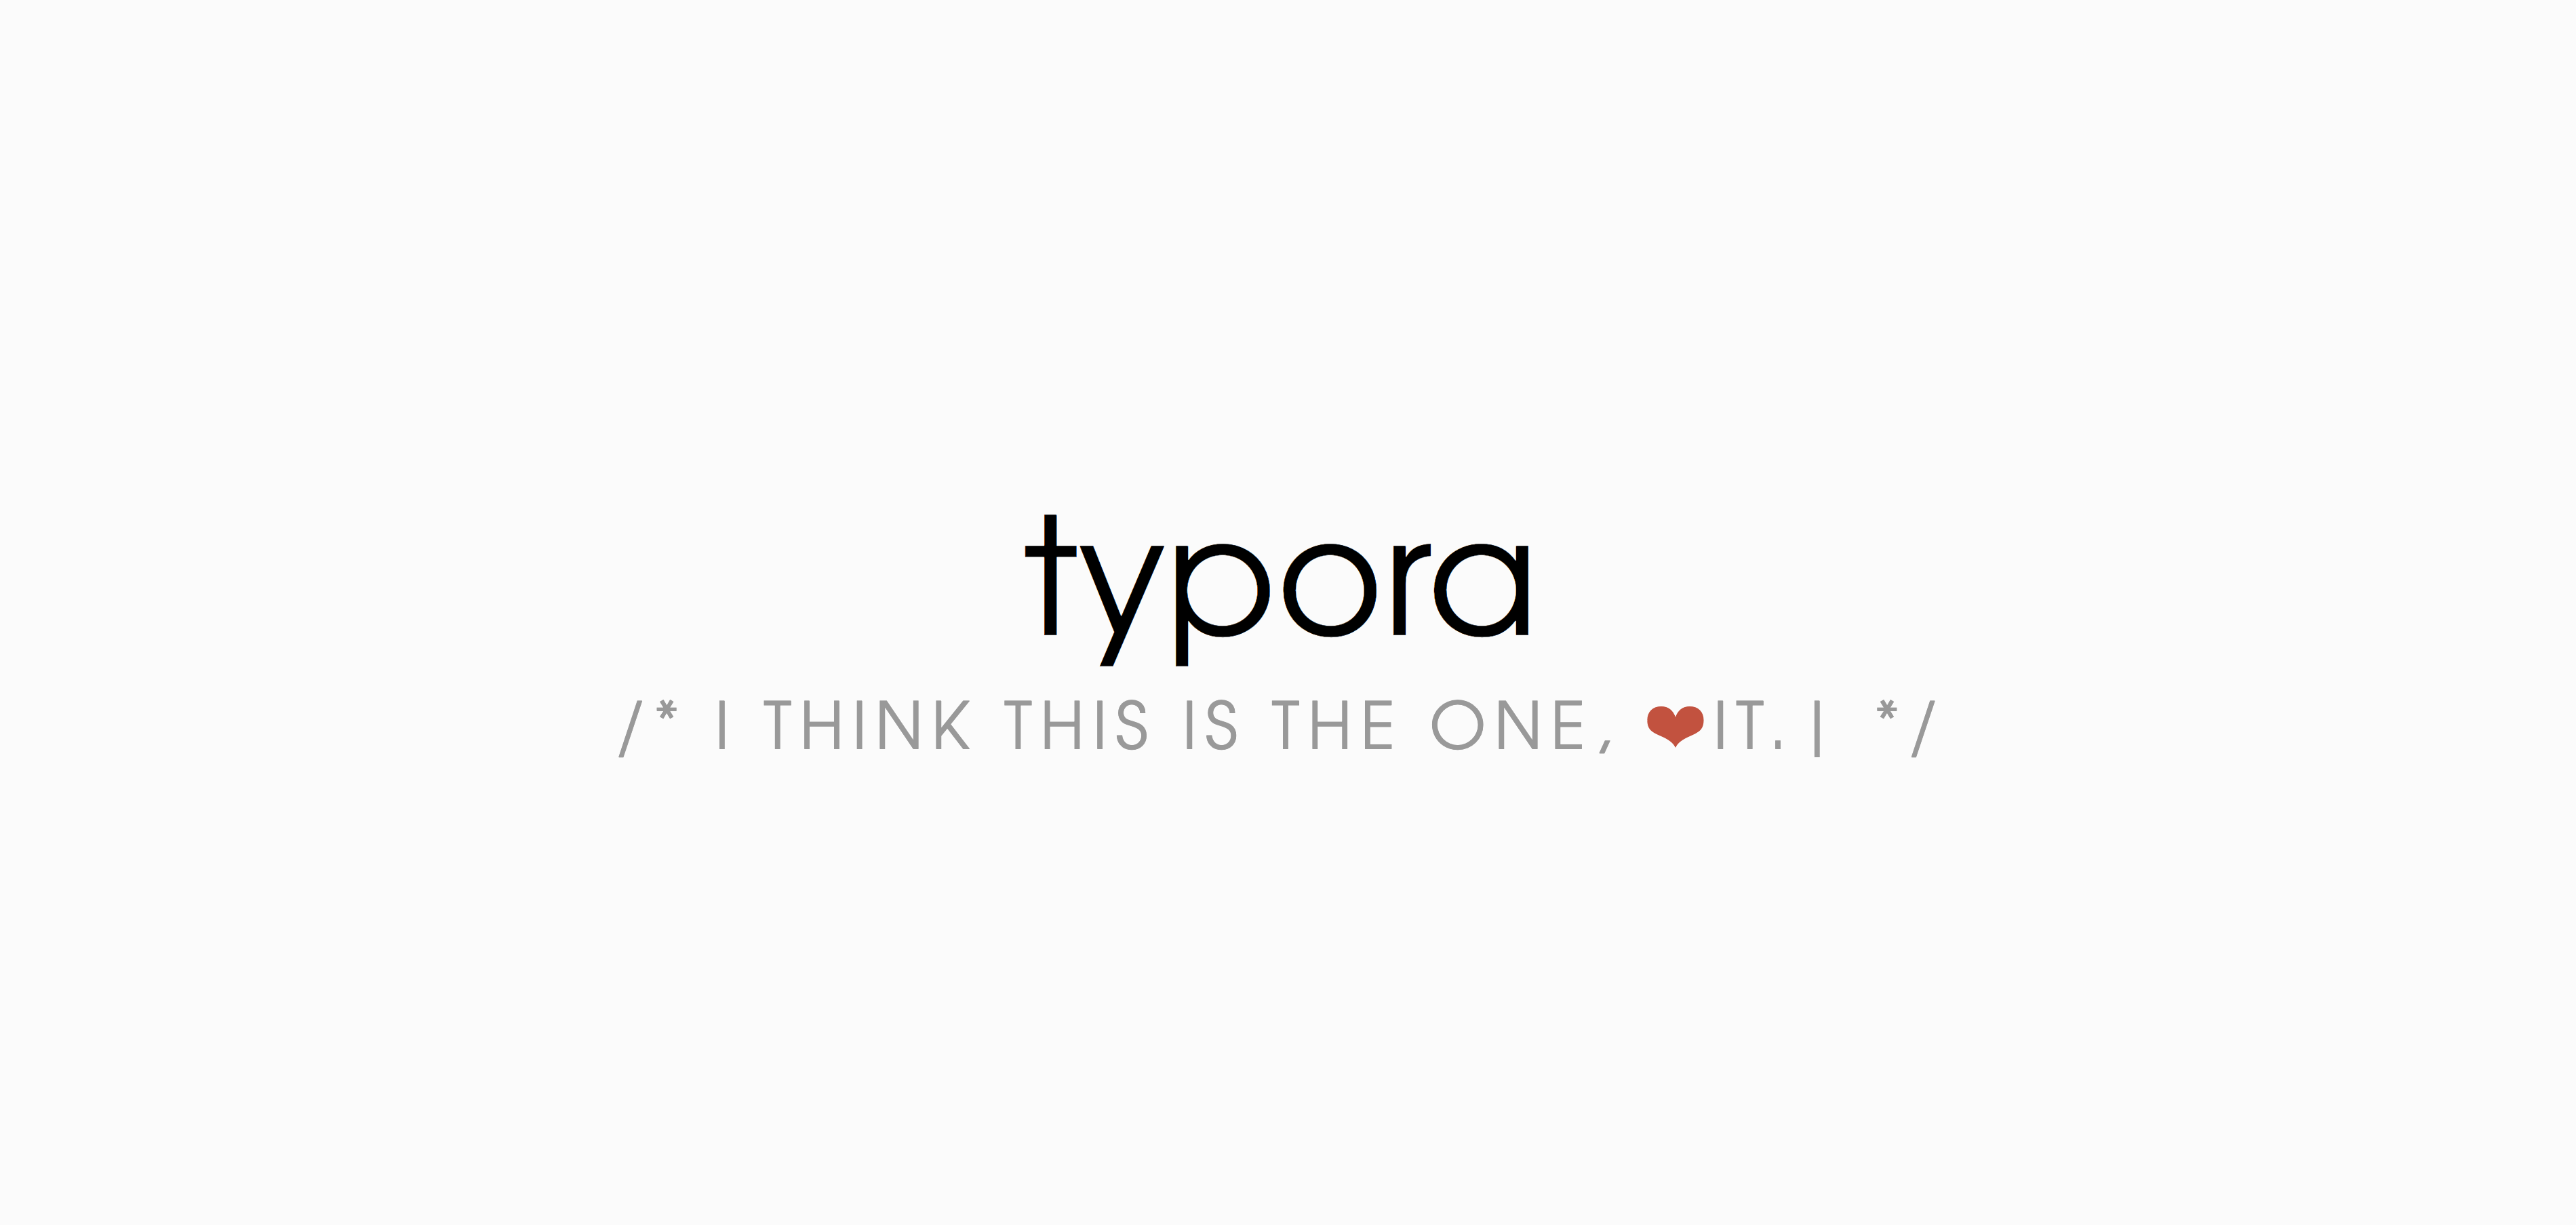 Typora 图片自动上传阿里OSS